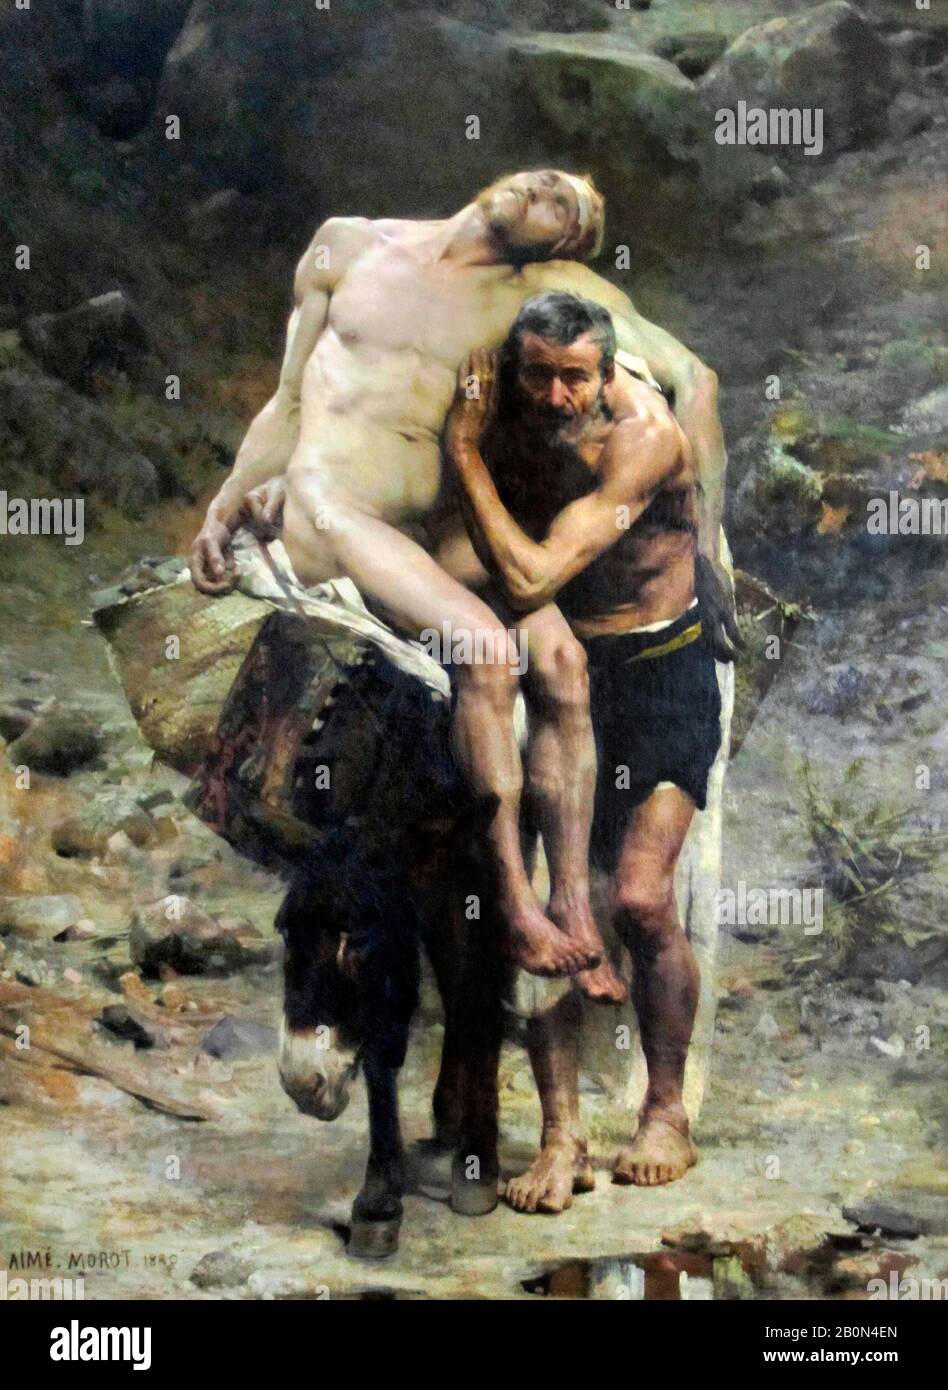 El Buen Samaritano - Aimé Morot, 1880 Foto de stock